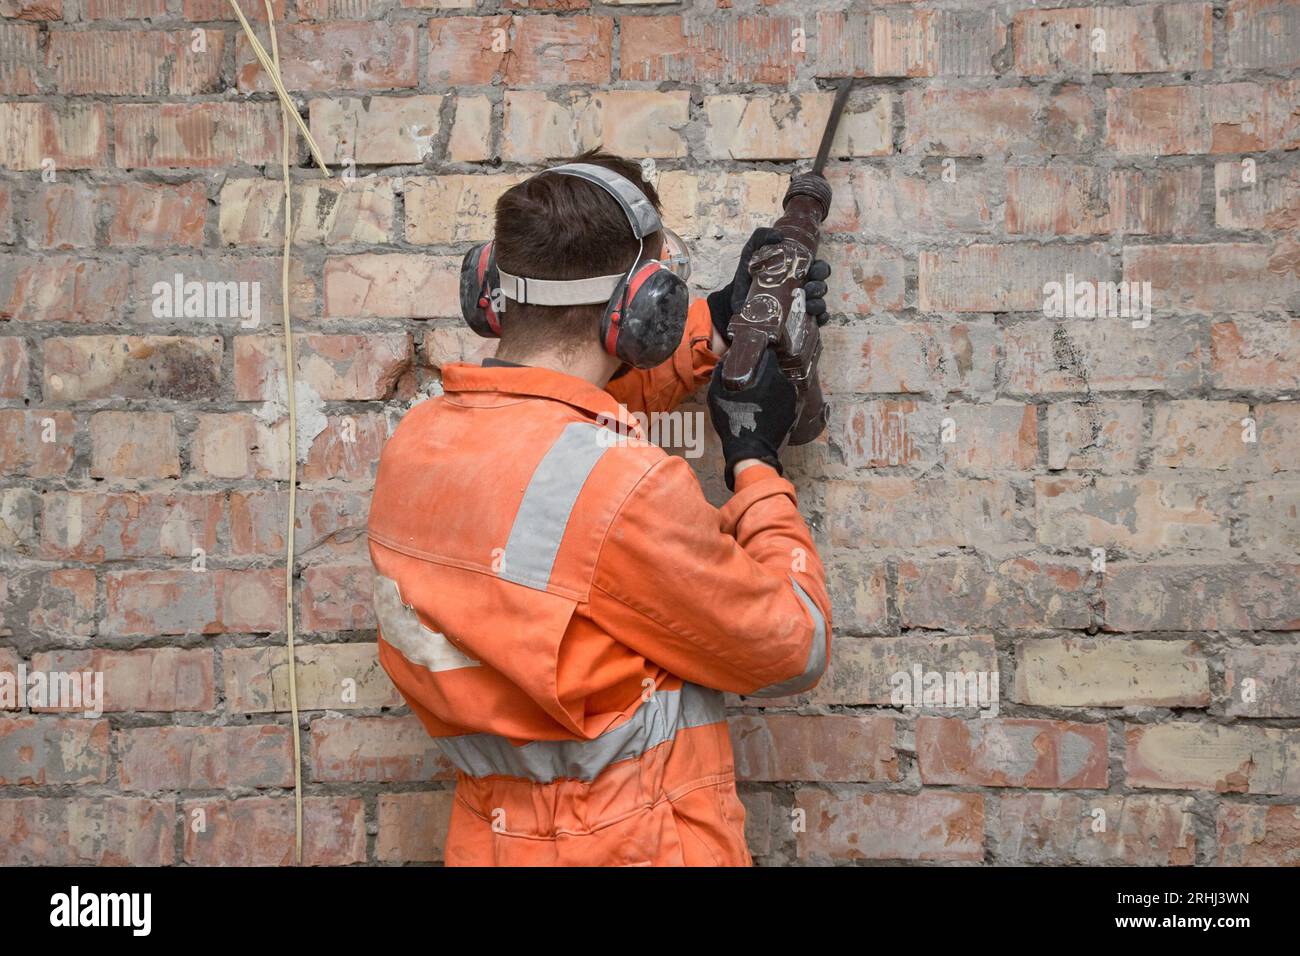 Travailleur de la construction enlevant le vieux plâtre du mur de briques rouges à la perceuse à percussion en position verticale, portant des gants, un masque, un casque antibruit et une couverture orange Banque D'Images